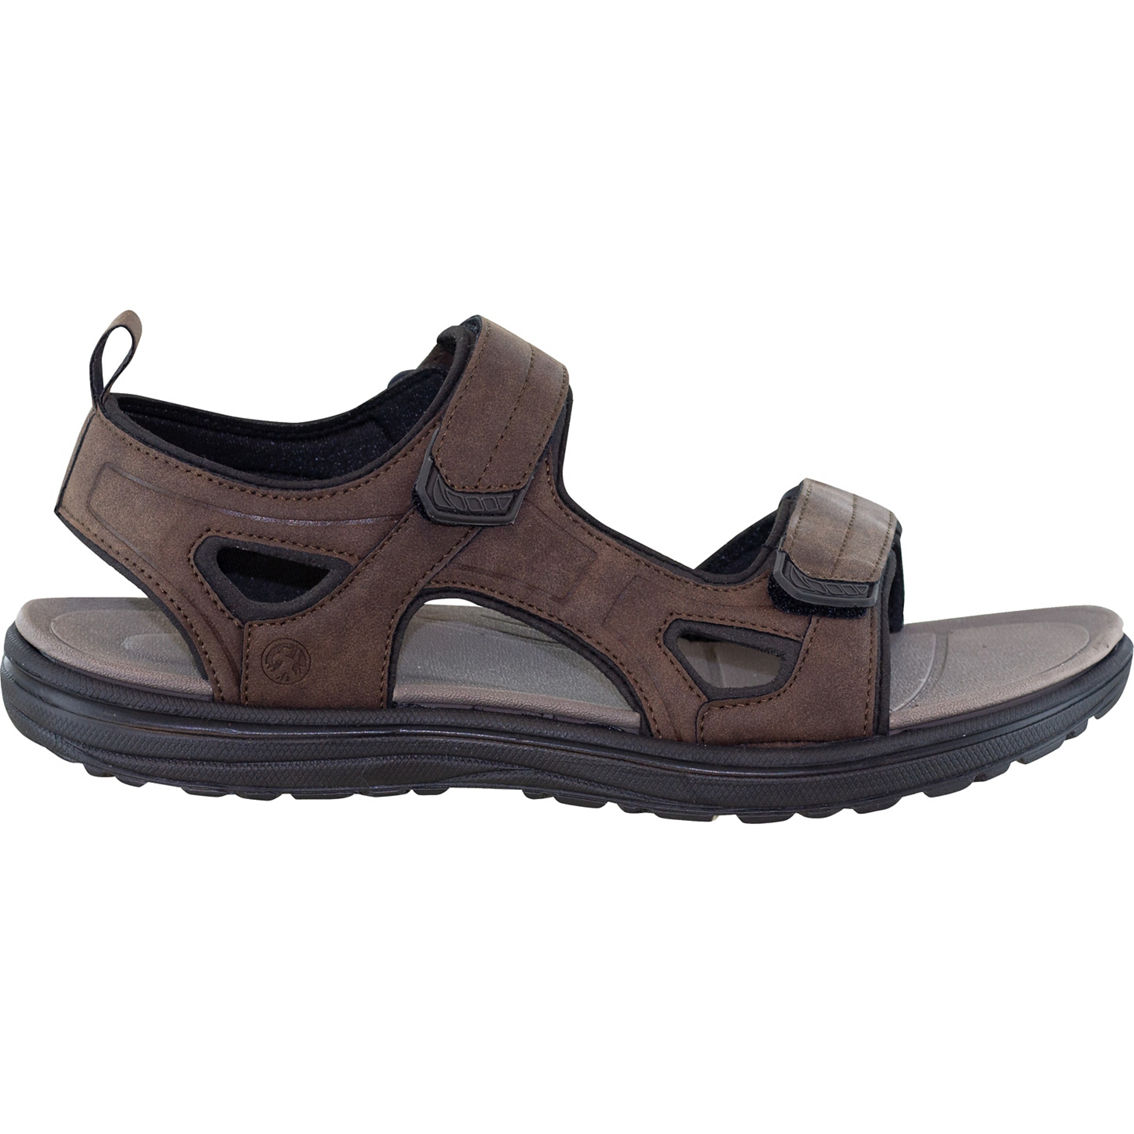 Northside Men's Riverside Lite Sandals | Sandals & Flip Flops | Shoes ...